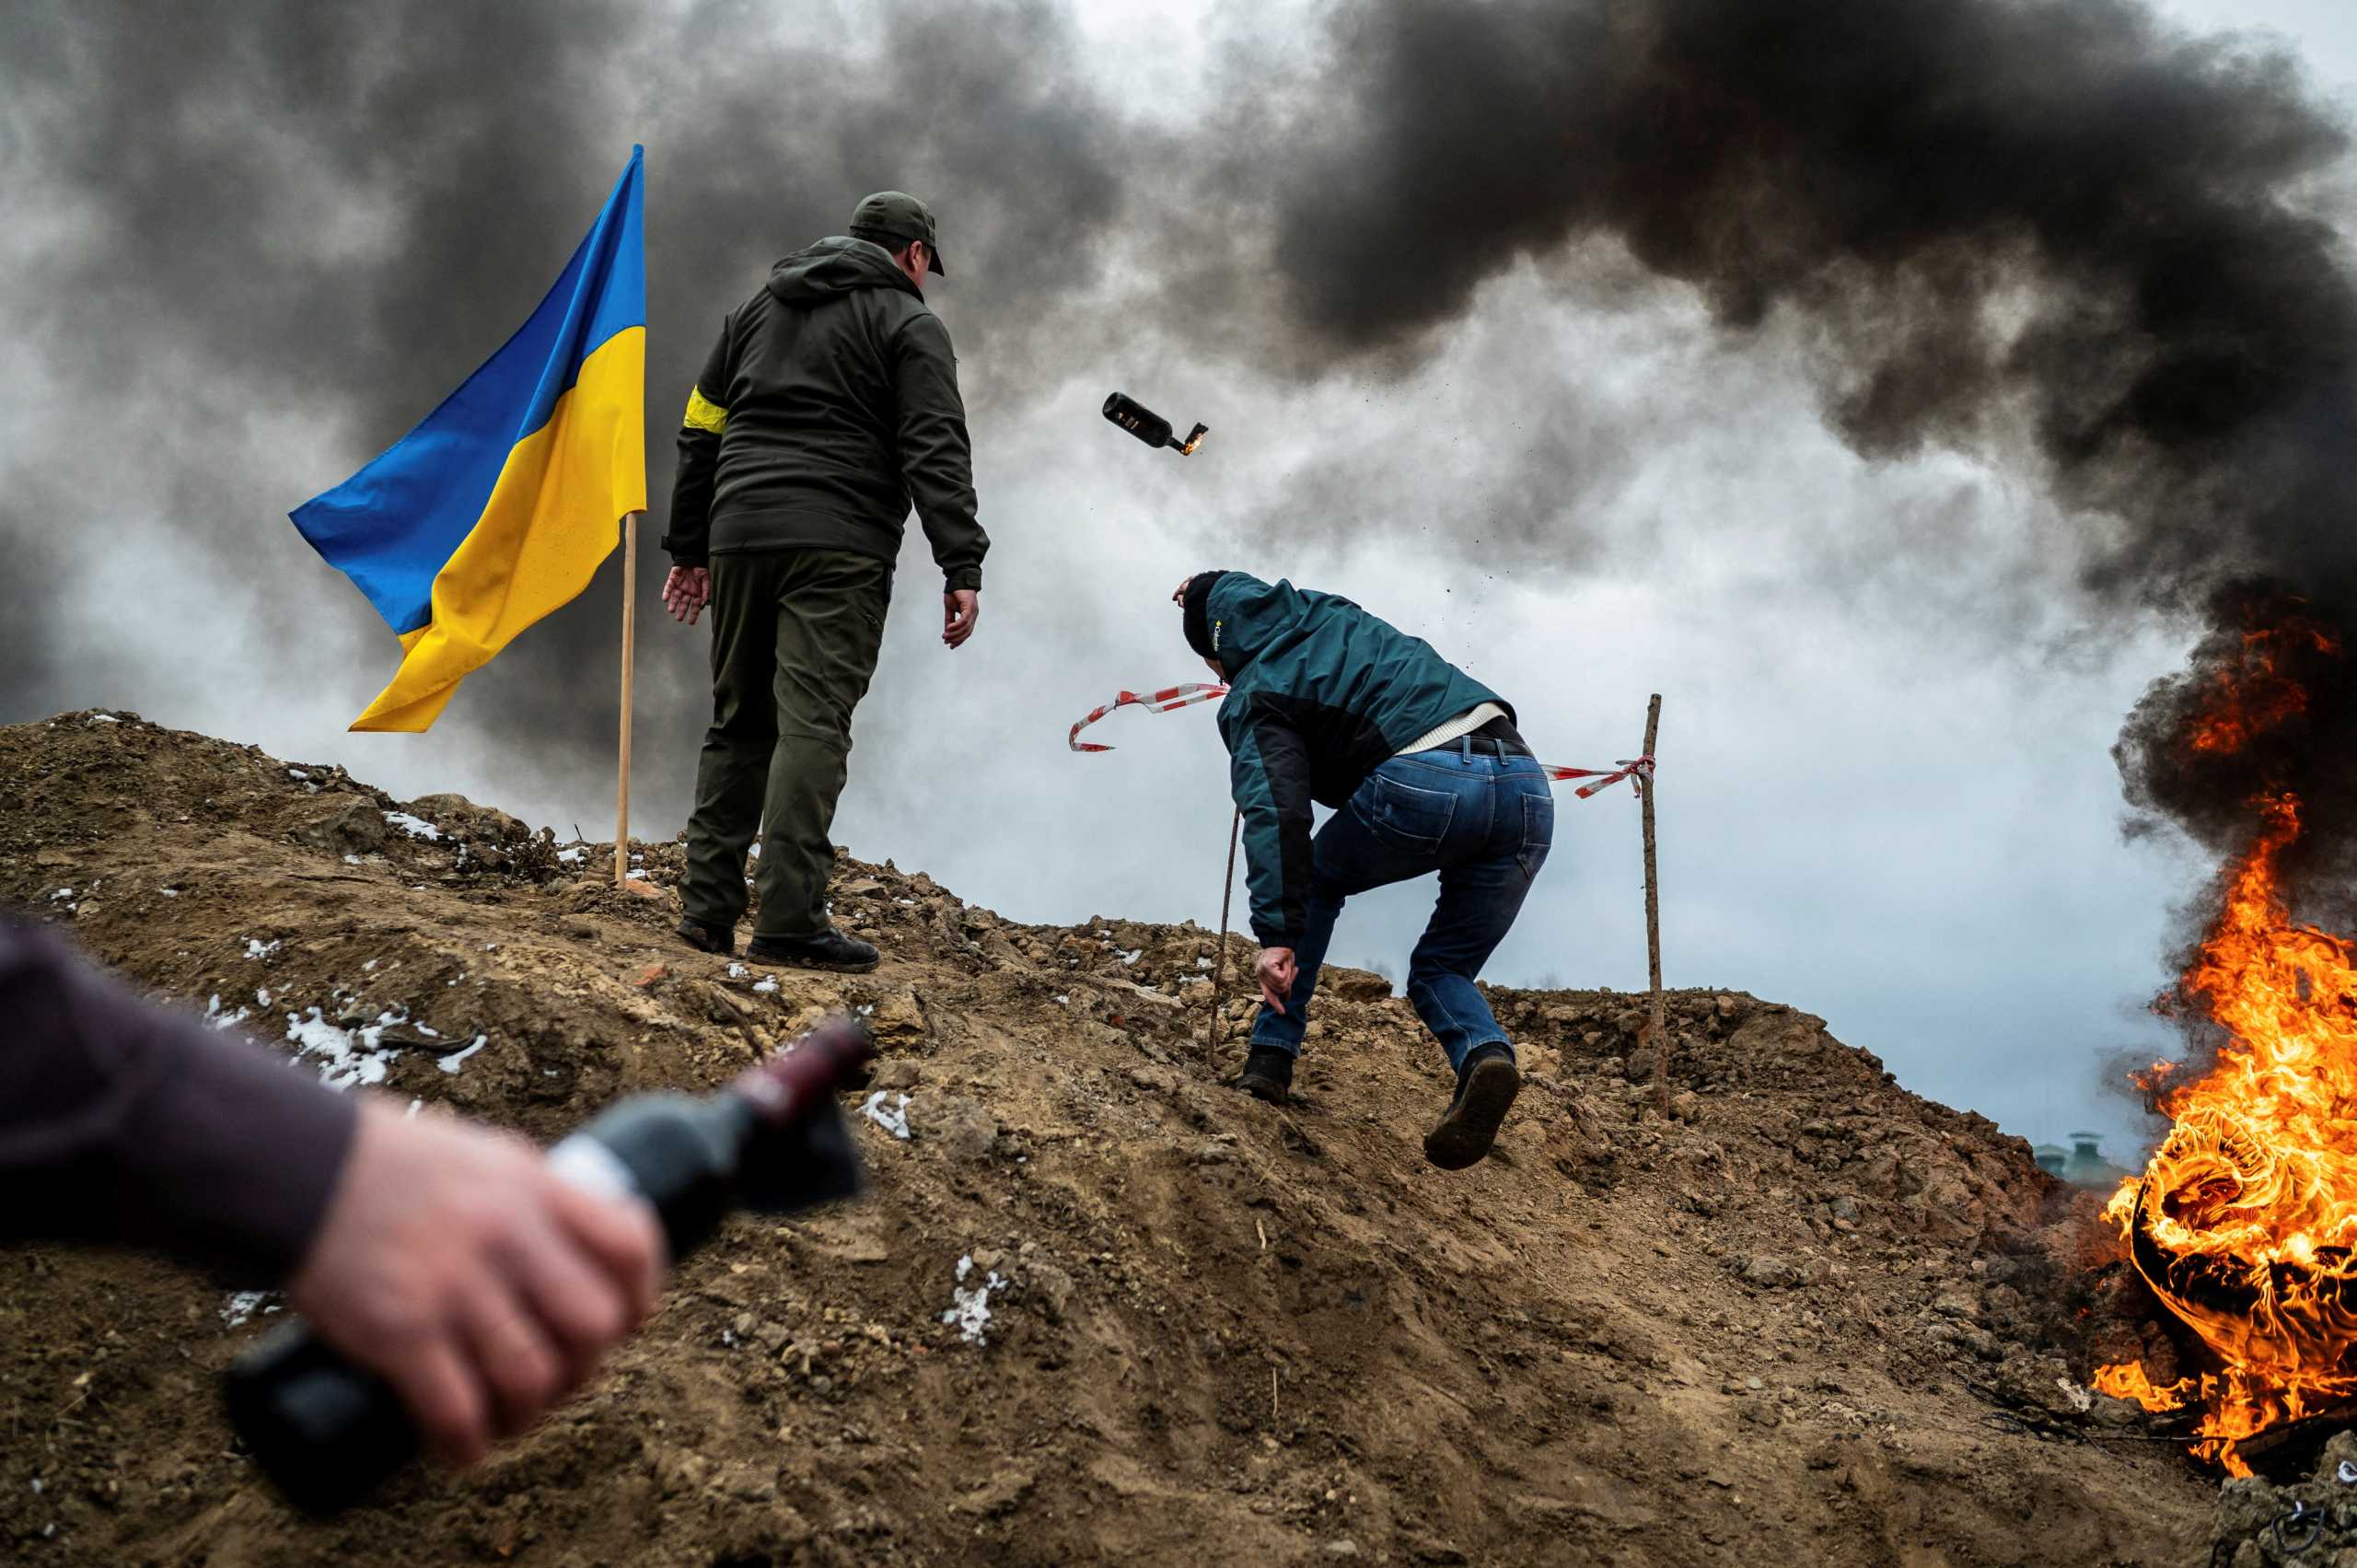 Πόλεμος στην Ουκρανία: δελτία ειδήσεων κάθε ώρα από την ΕΡΤ1